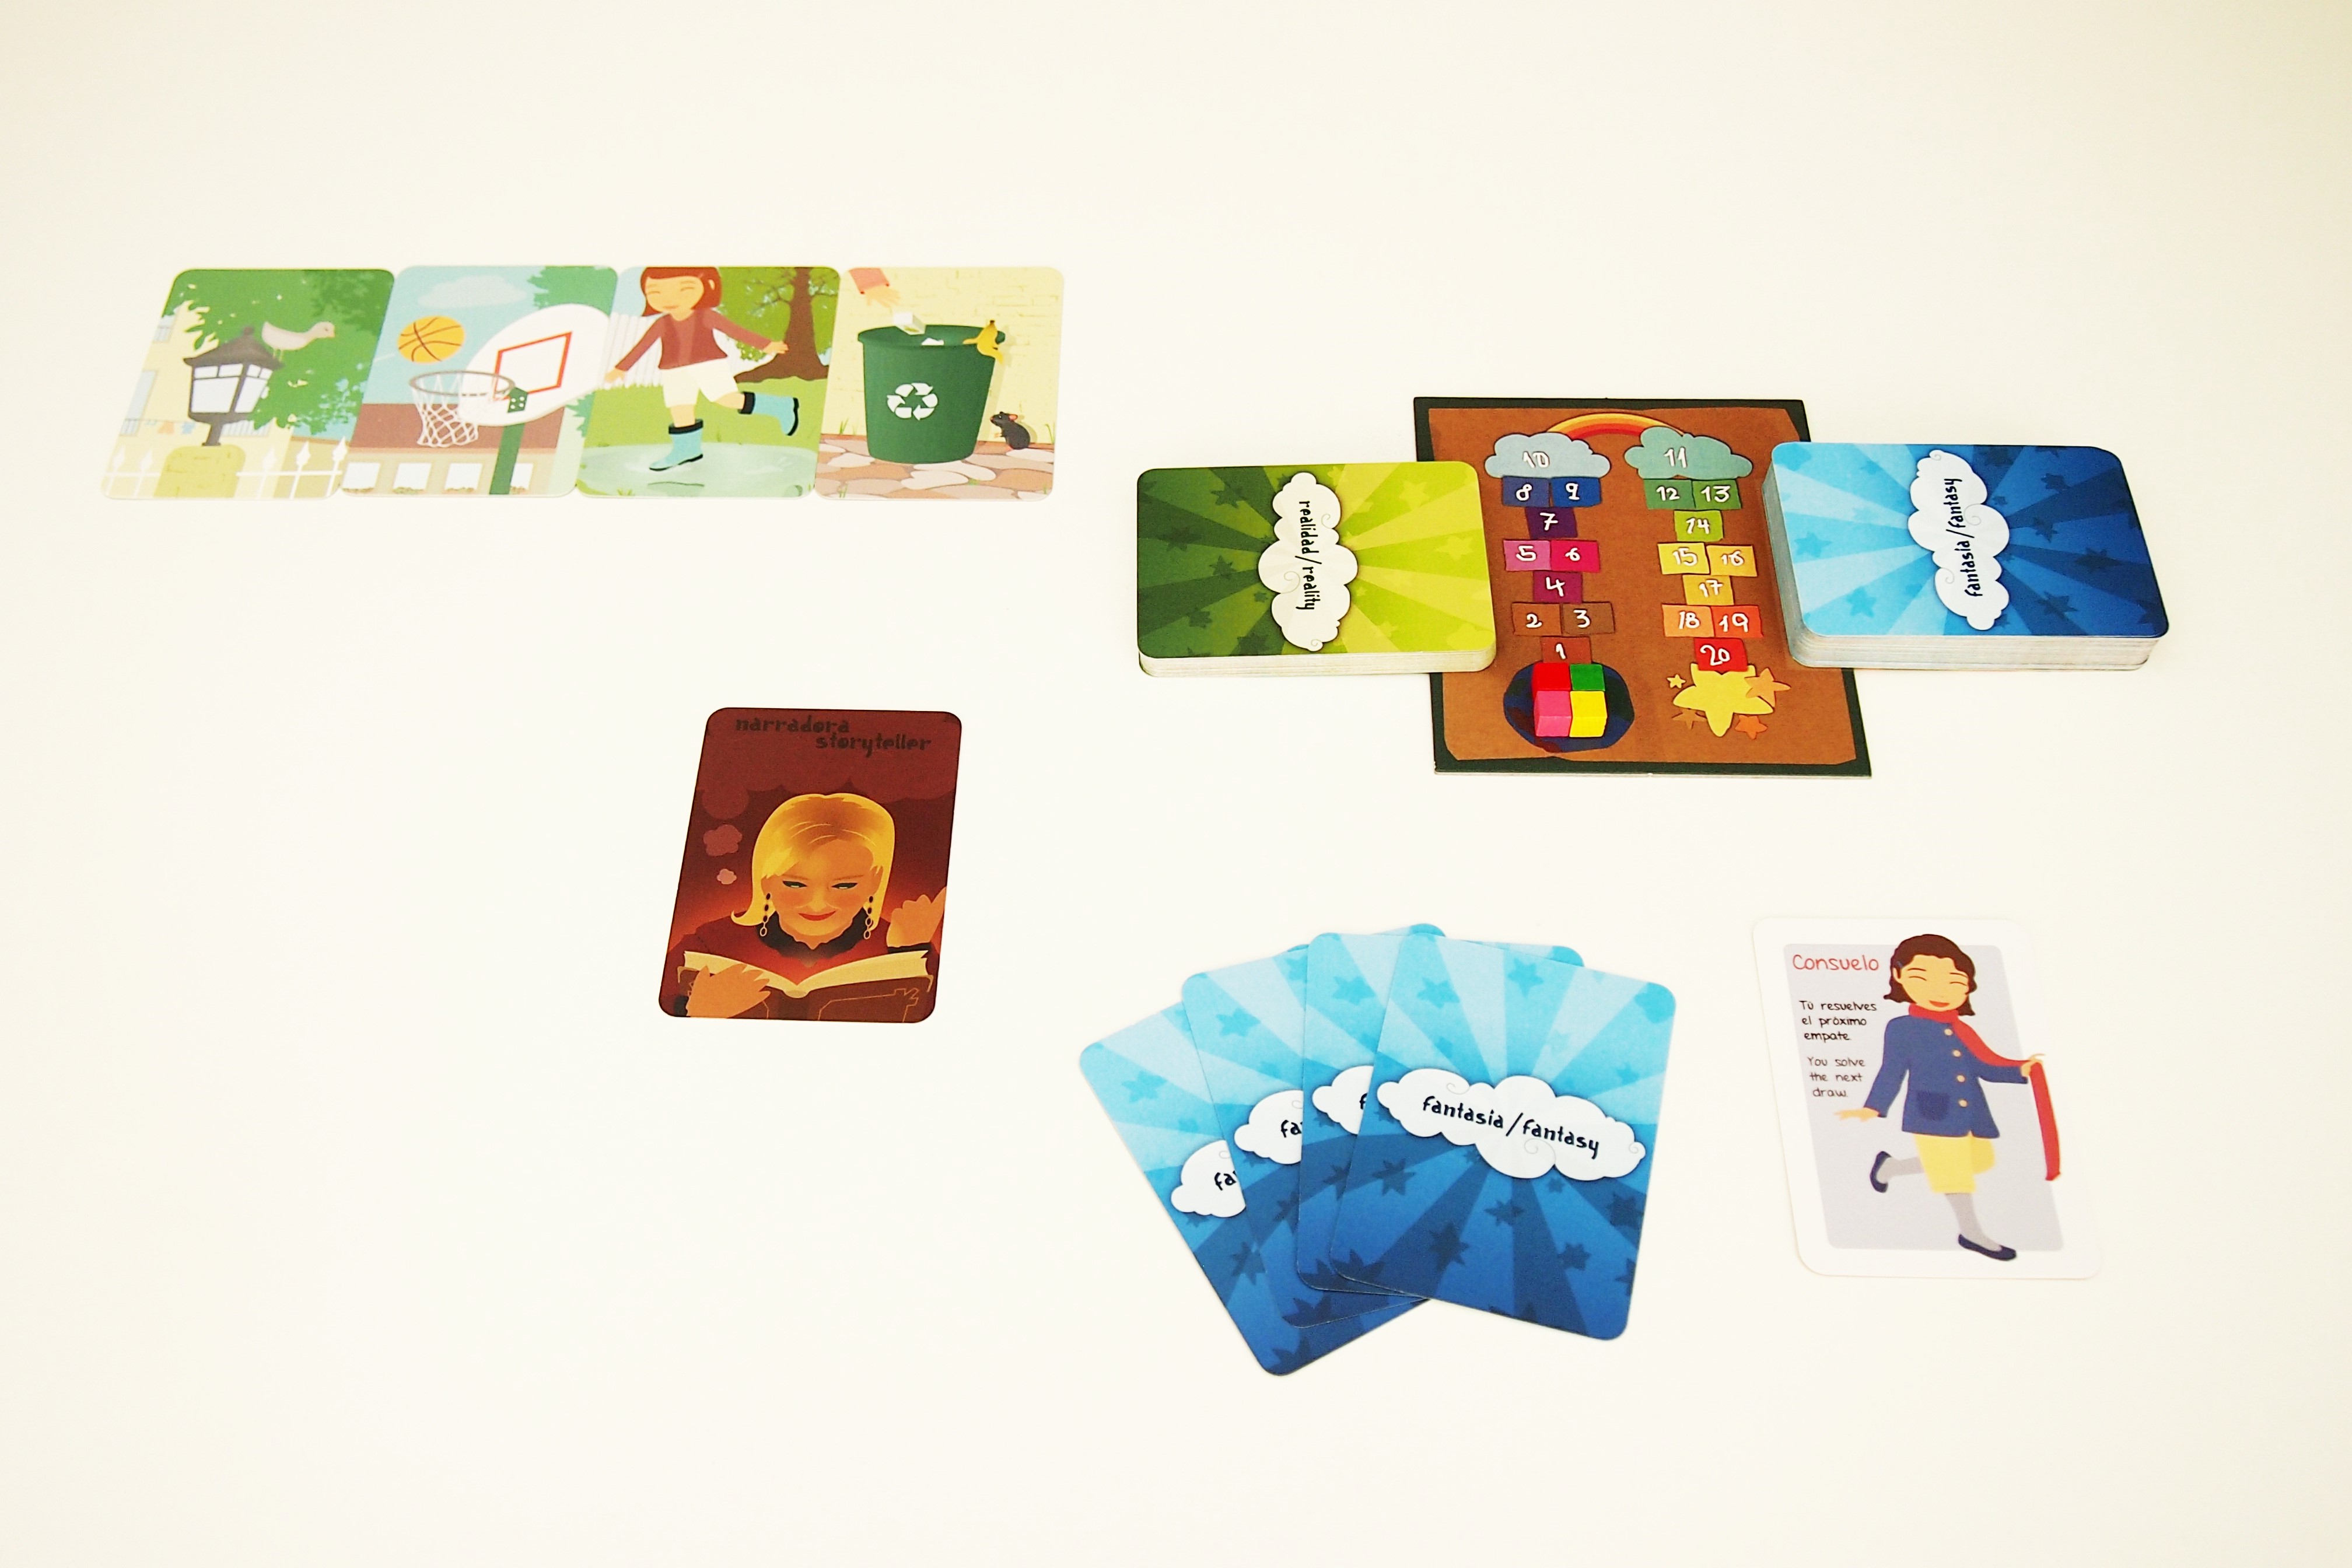 Preparación de la partida. Tras elegir al narrador inicial, se reparten cuatro cartas de fantasía y un personaje a cada jugador. 